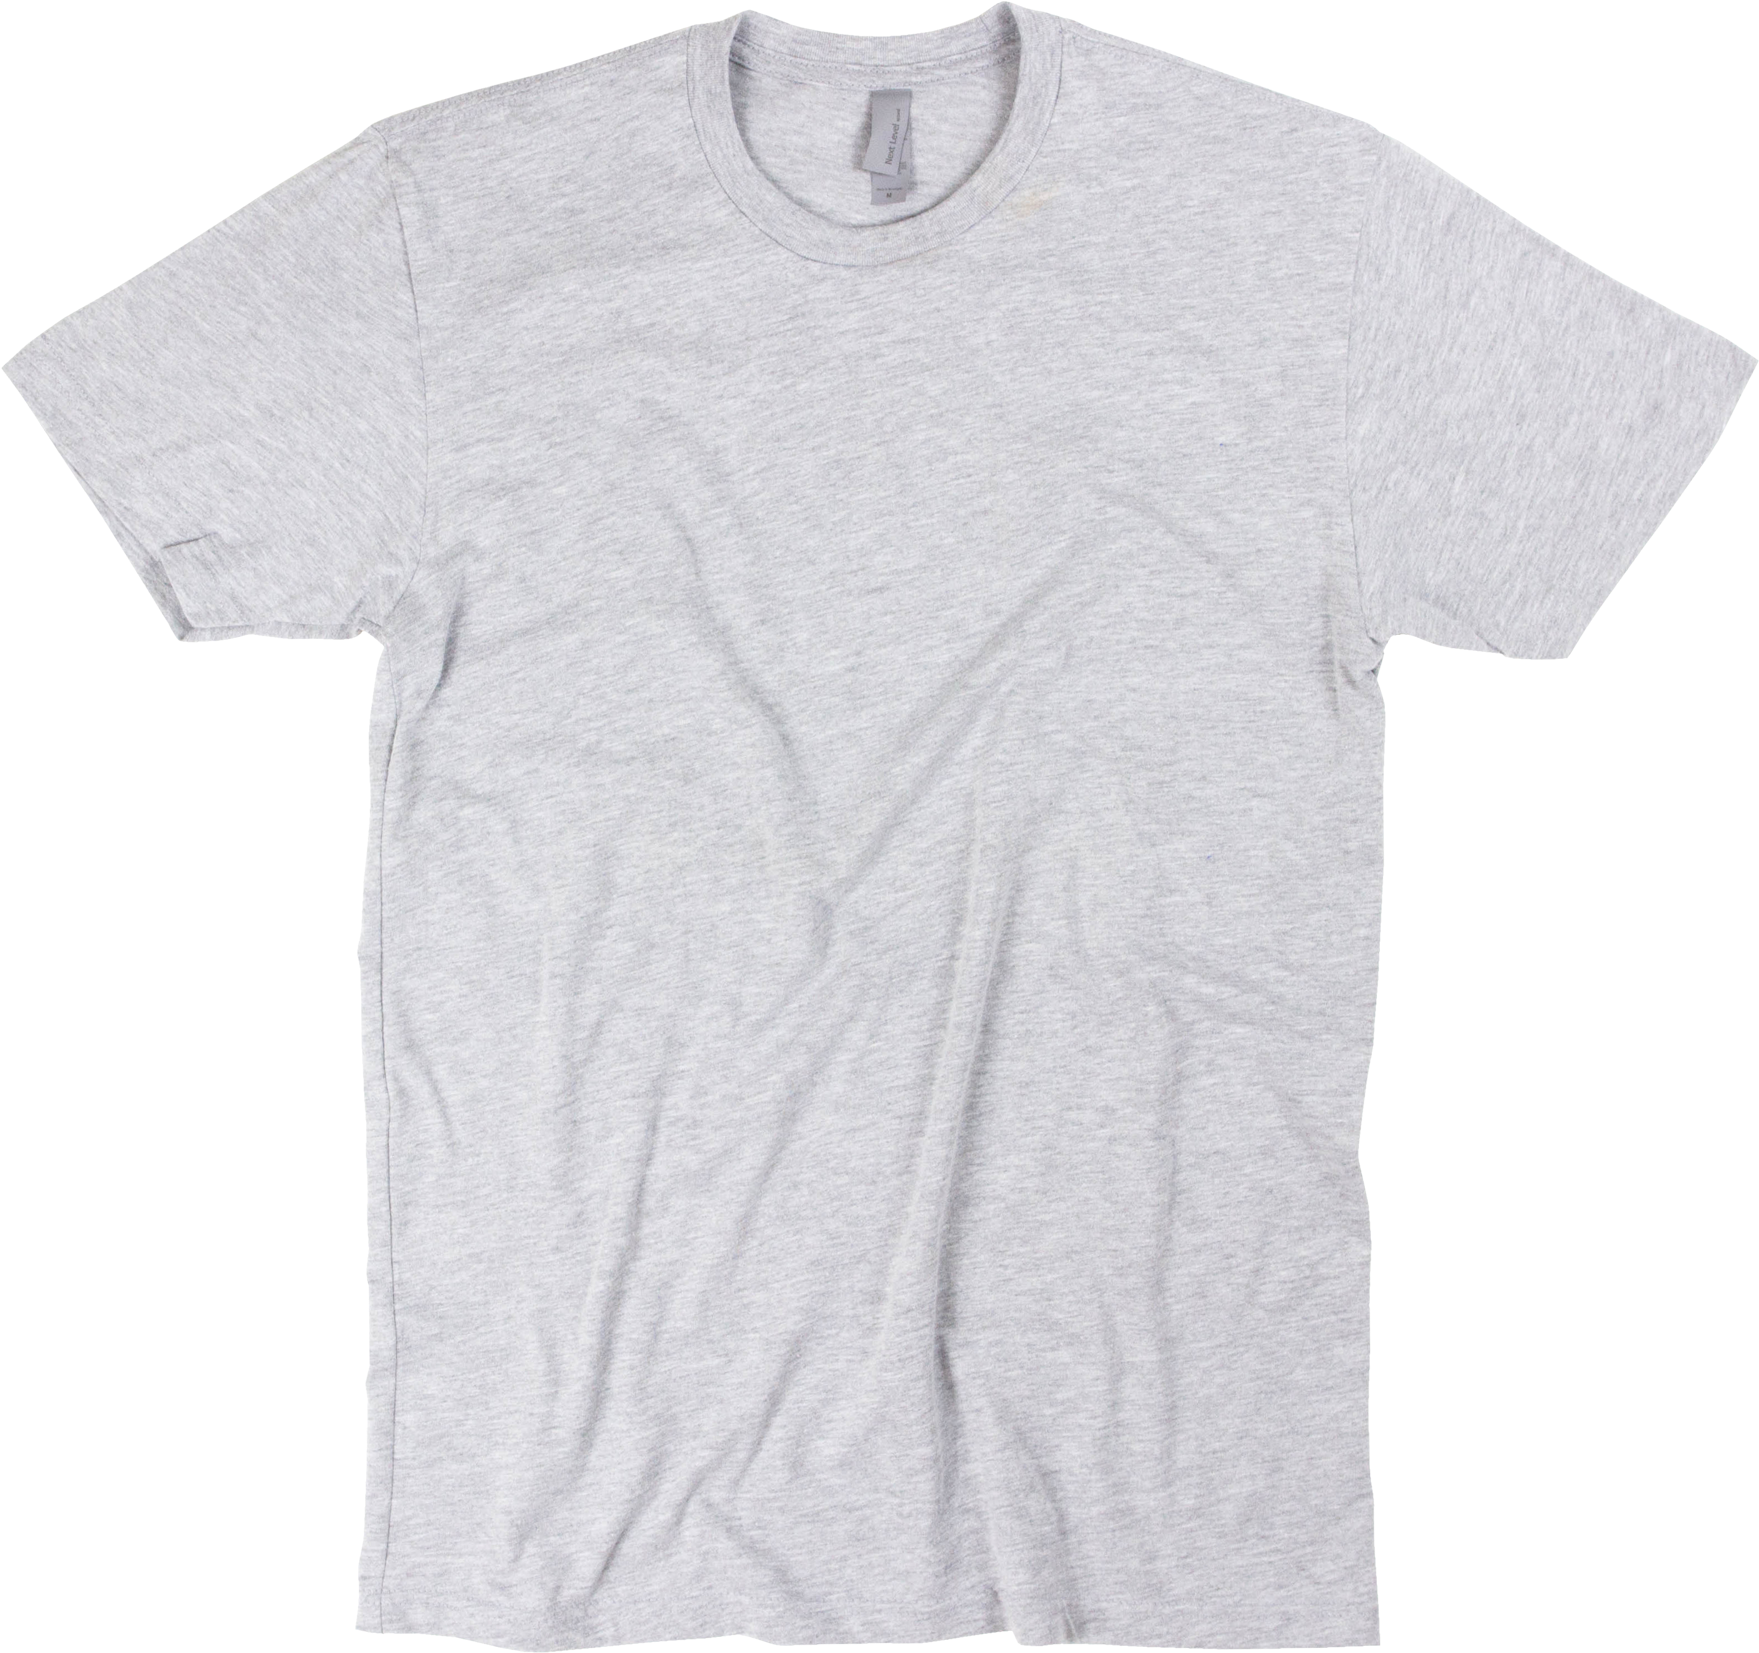 Plain Gray T Shirt Mockup PNG image